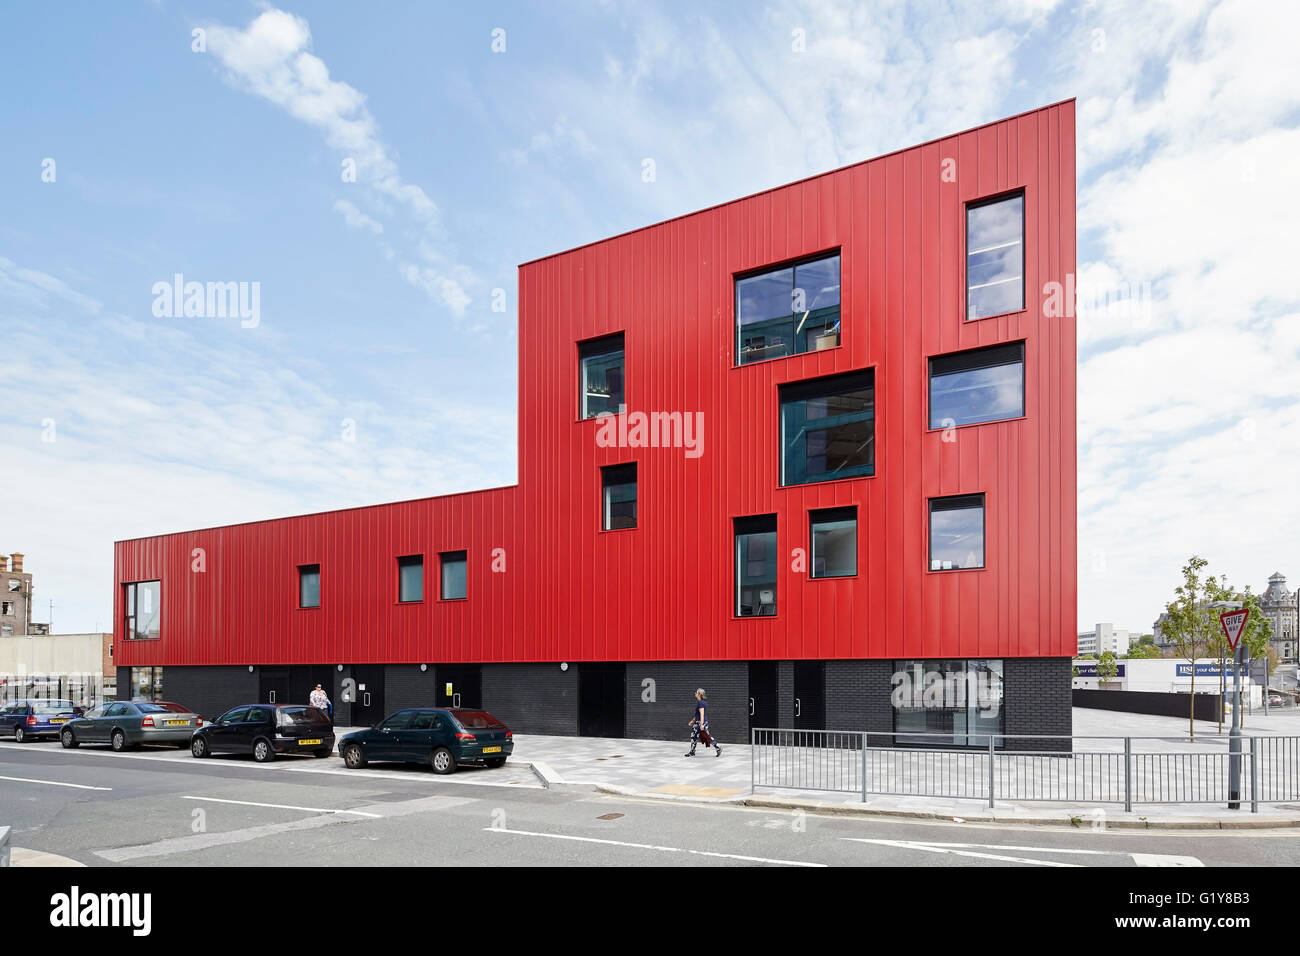 Außenfassade mit quadratischen und rechteckigen Fenstern. Plymouth Creative School of Art, Plymouth, Vereinigtes Königreich. Architekt: Feilden Clegg Bradley Studios LLP, 2015. Stockfoto